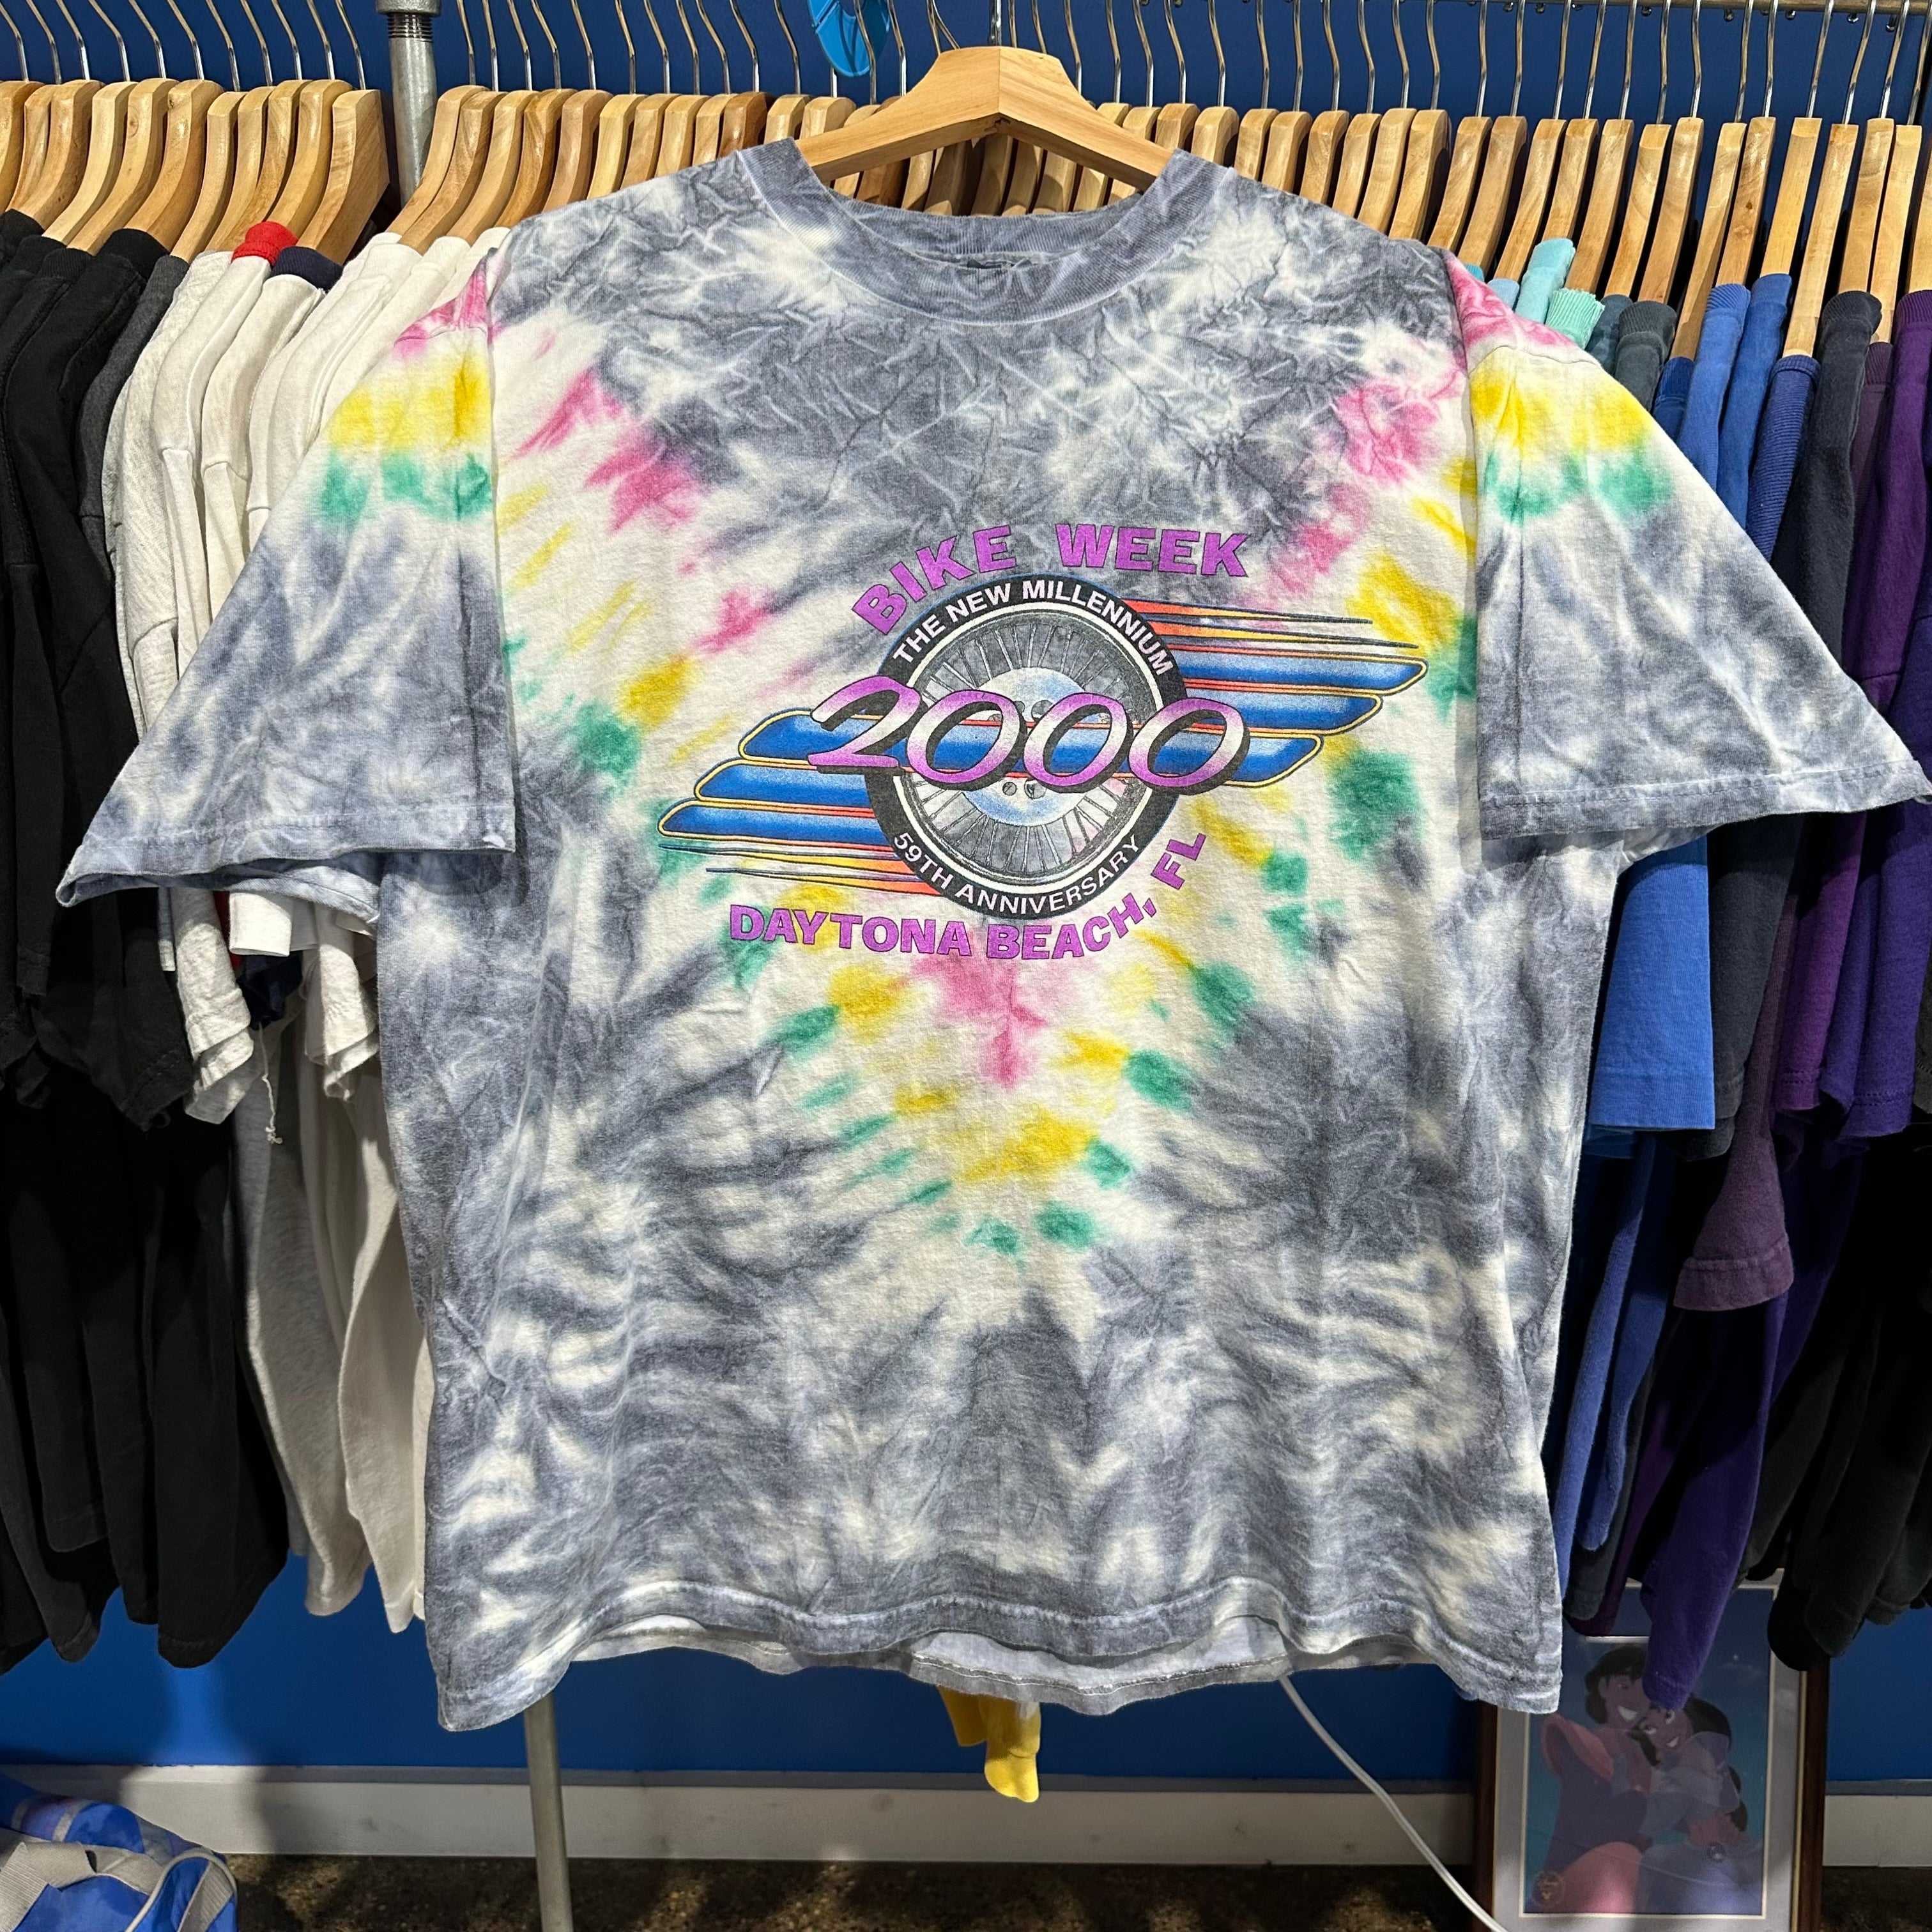 2000 Bike Week Dayton Tie Dye T-Shirt